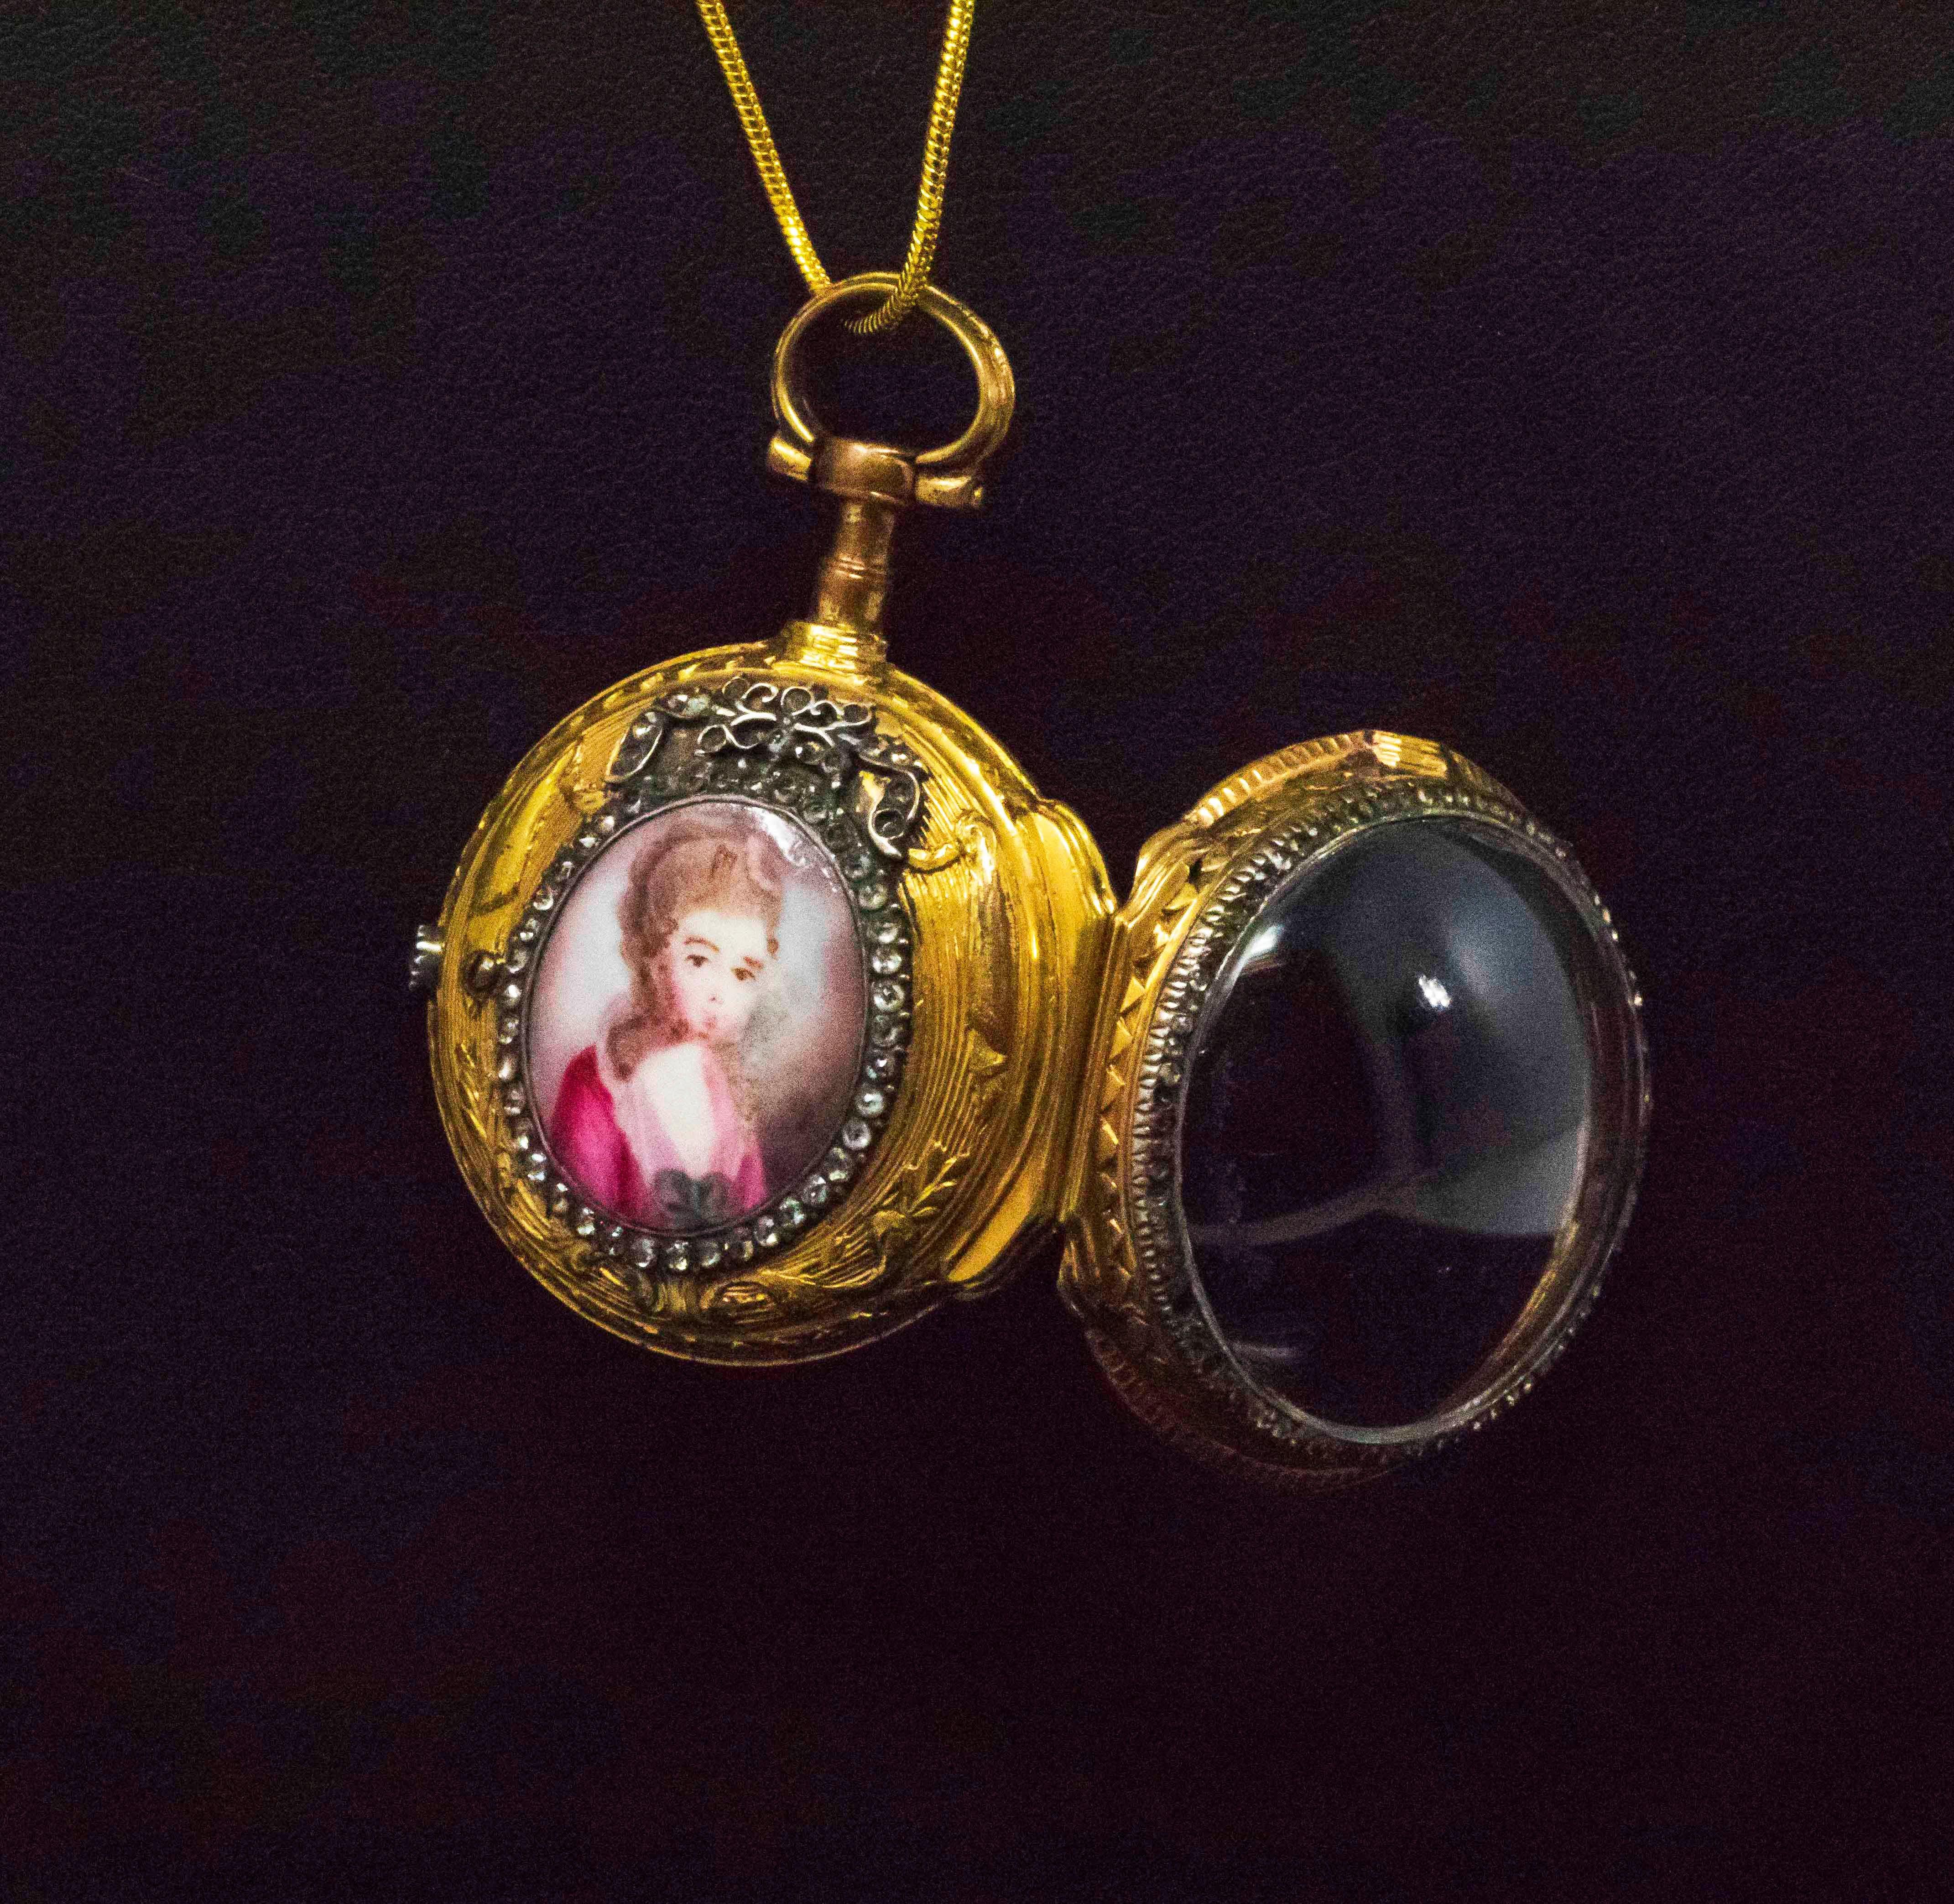 1700s jewelry